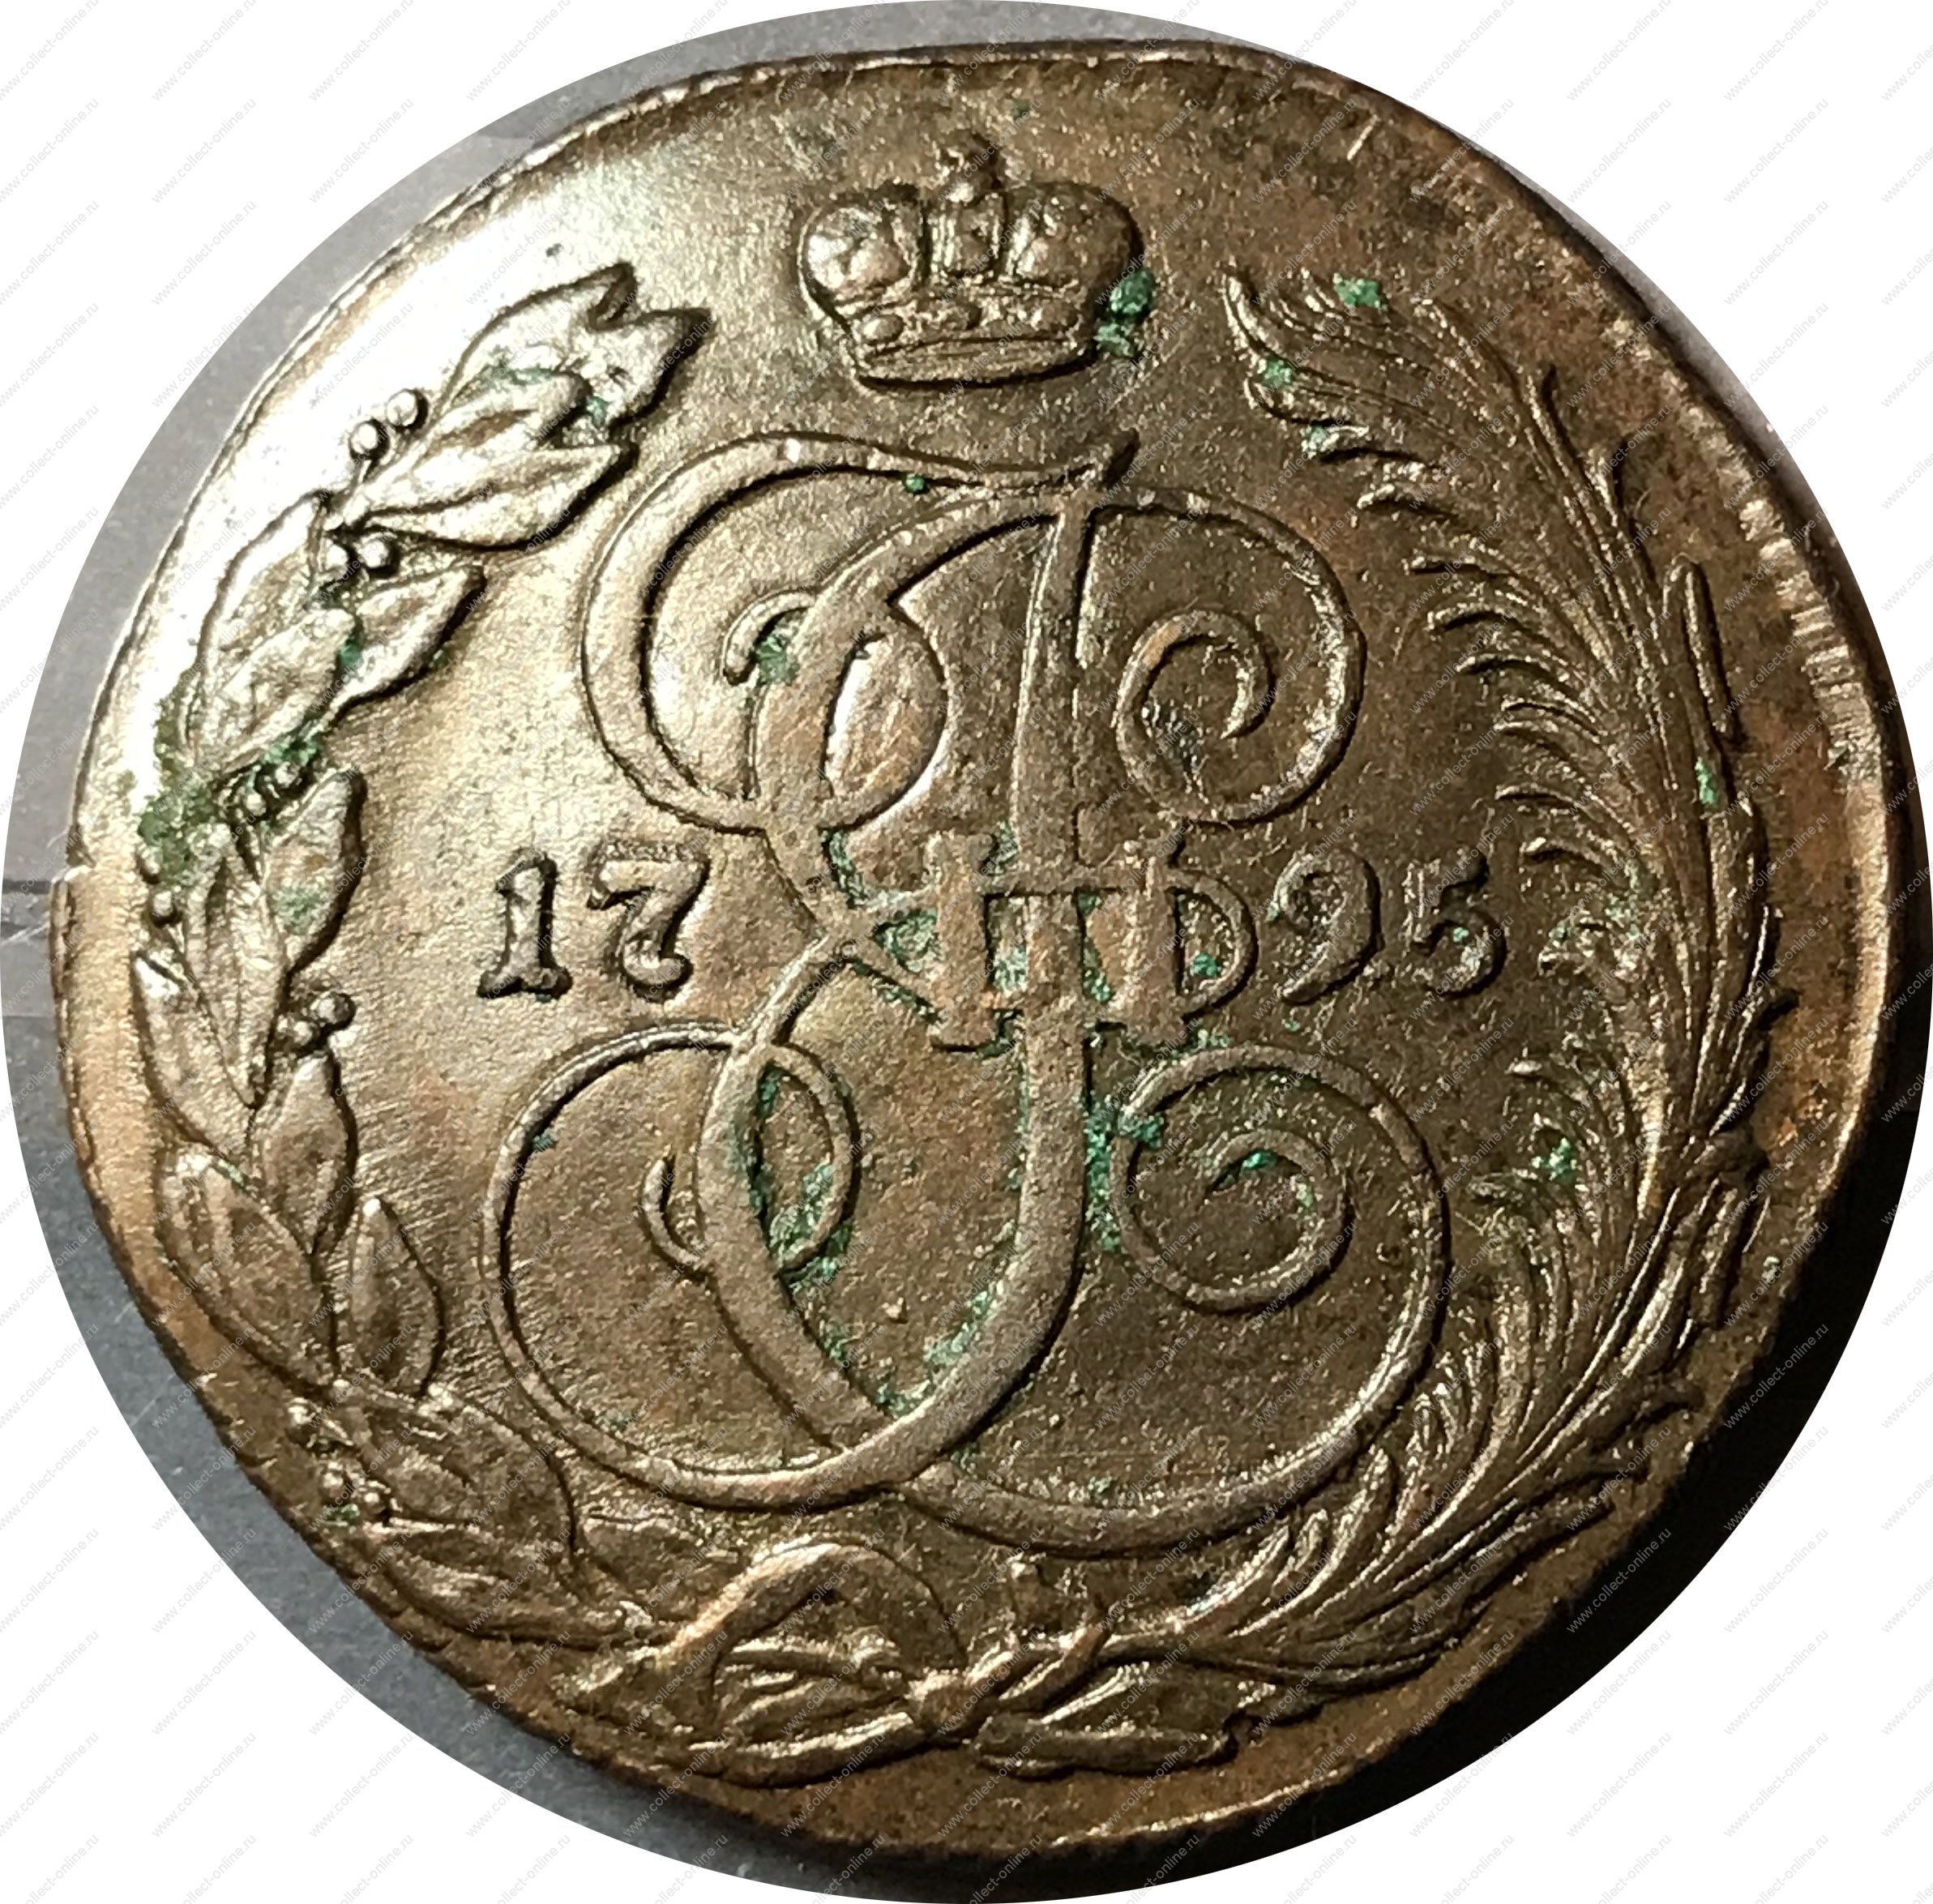 Аукцион царских. Царские монеты Екатерины 2 1795г. Медные монеты с вензелем Екатерины 2. Медный пятак Екатерины 2 вес.